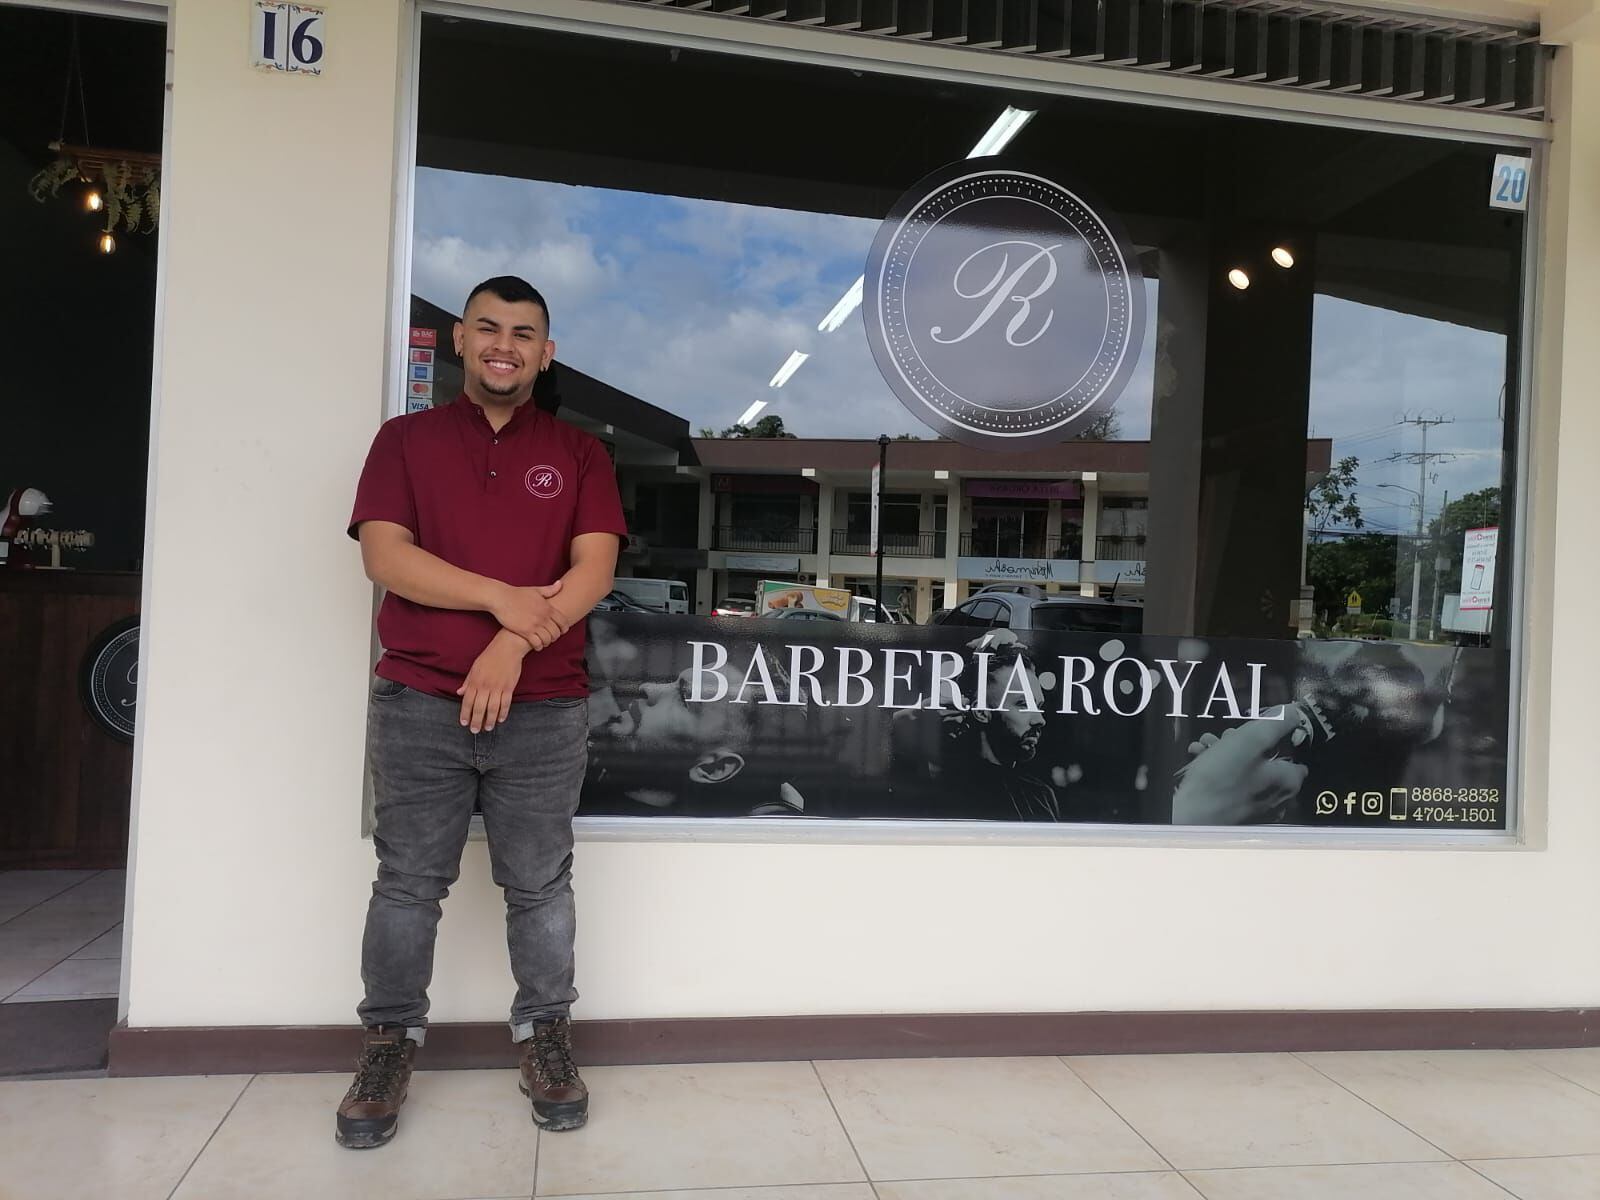 Rafael Montoya acepta Bitcón en su barbería desde hace 7 meses. Aunque que ese método de pago no es tan recurrente en su negocio, sí acepta que le ha atraído algunos clientes.